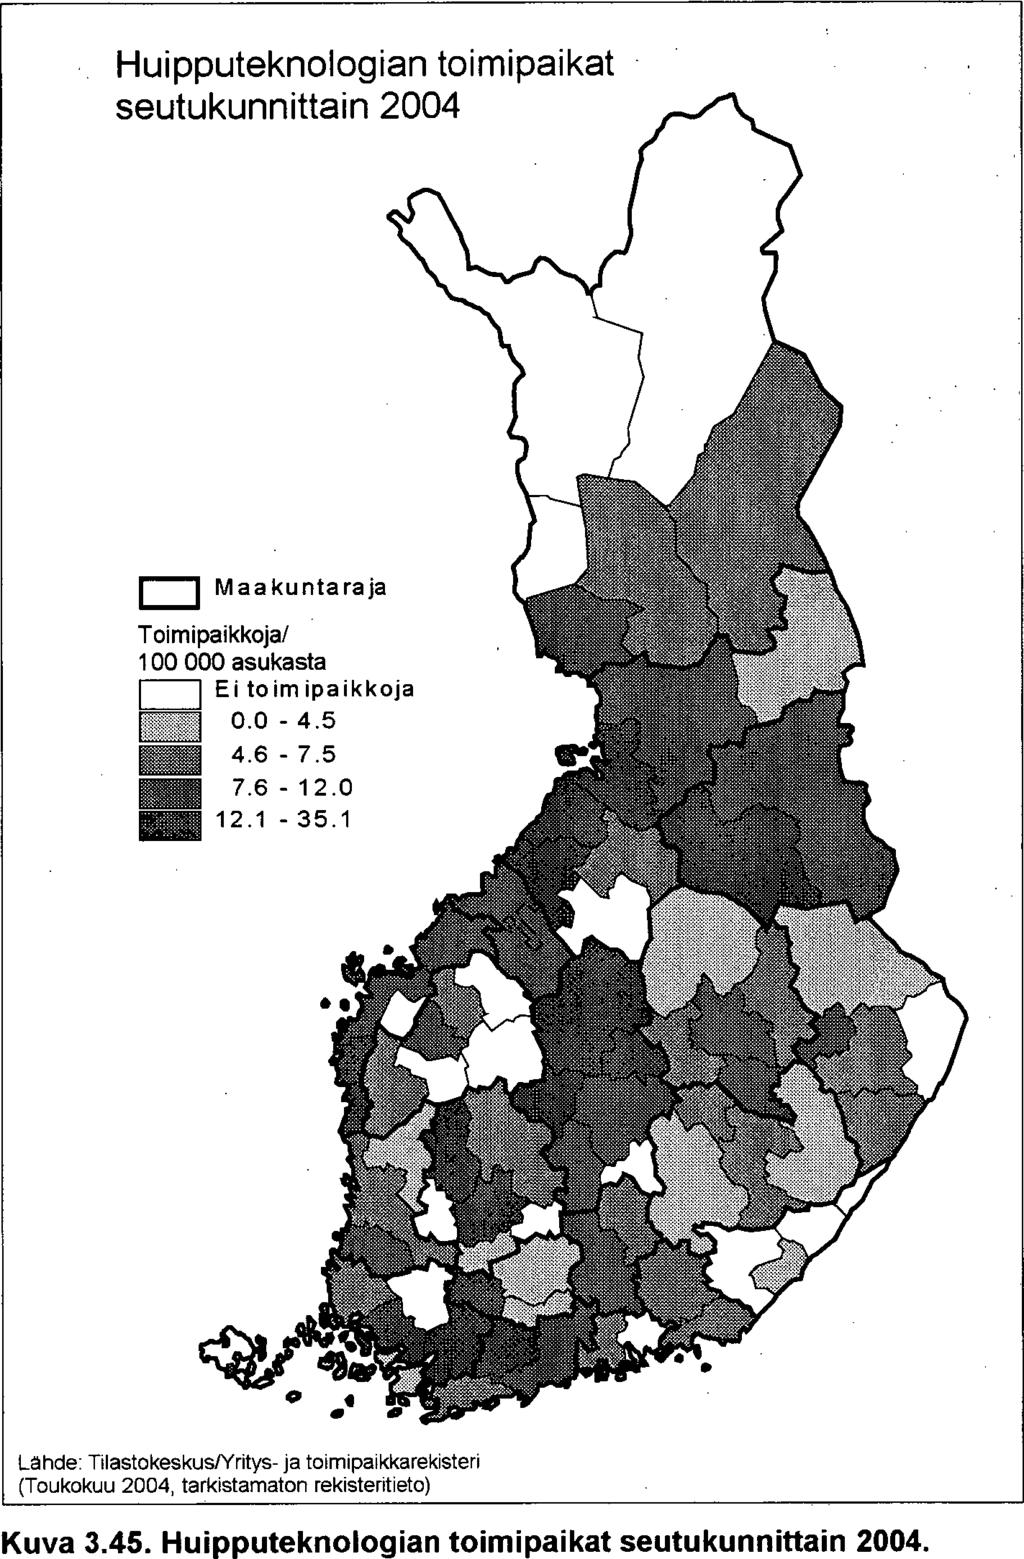 64 Huipputeknologian toimipaikat maakunnittain 2004 Pohiois-Pohjanmaa varsi nais-suomi Uusimaa Keski-Ponianmaa Pirkanmaa